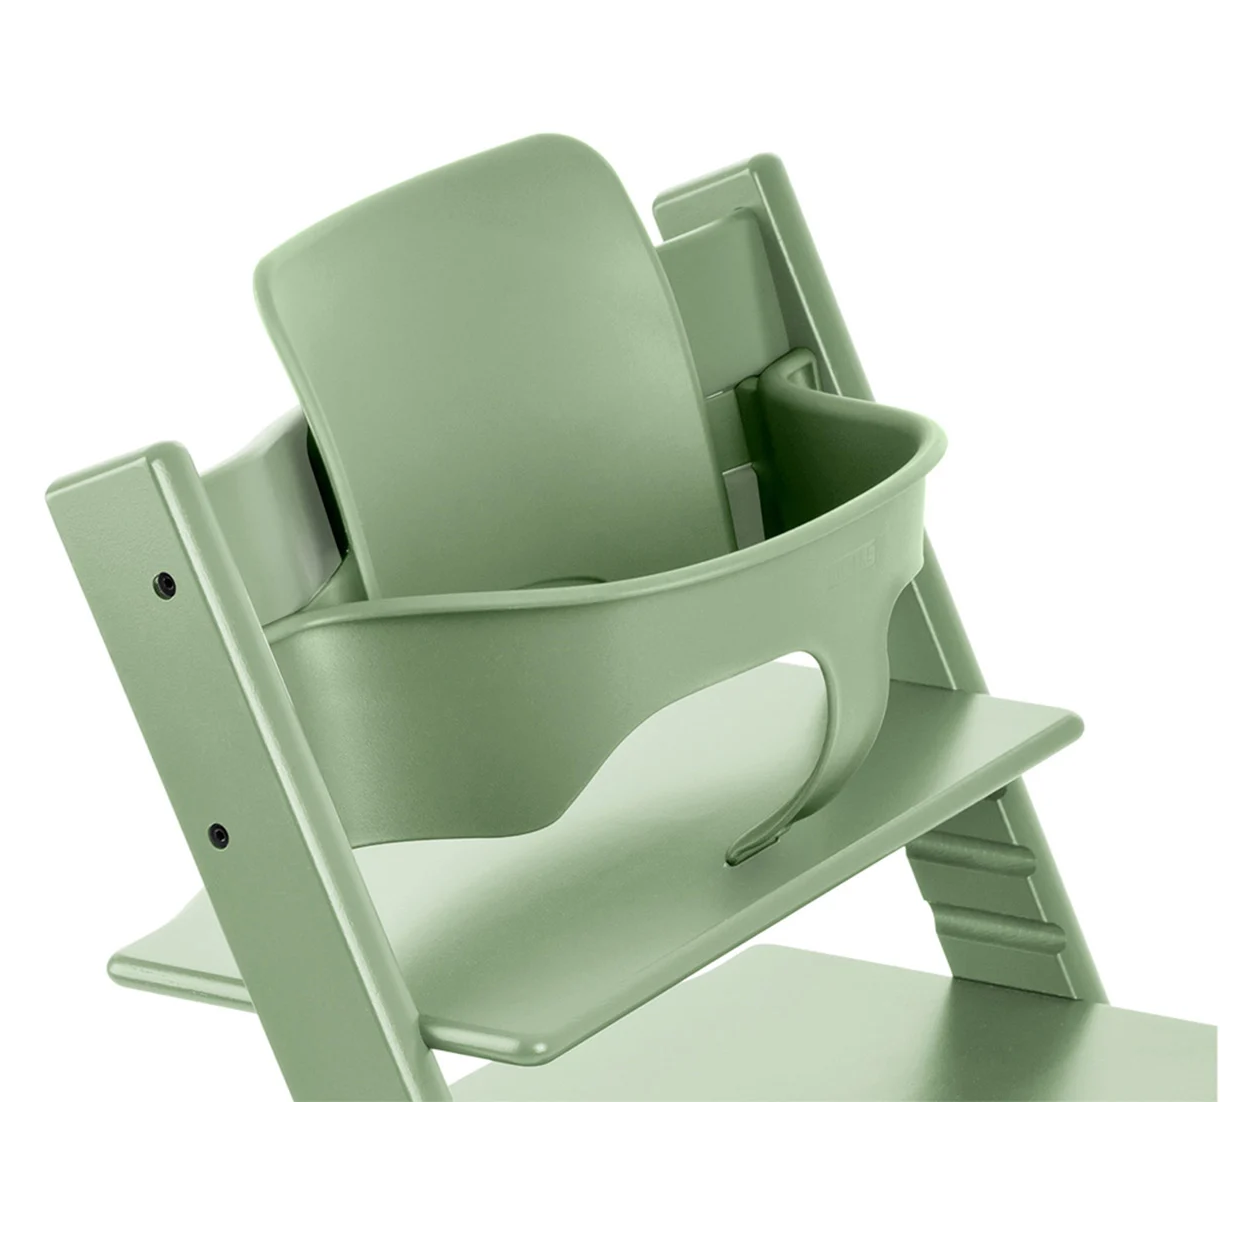 Набор Stokke Baby Set Tripp Trapp Moss Green: стульчик и спинка с ограничителем (k.100130.15) - фото 1